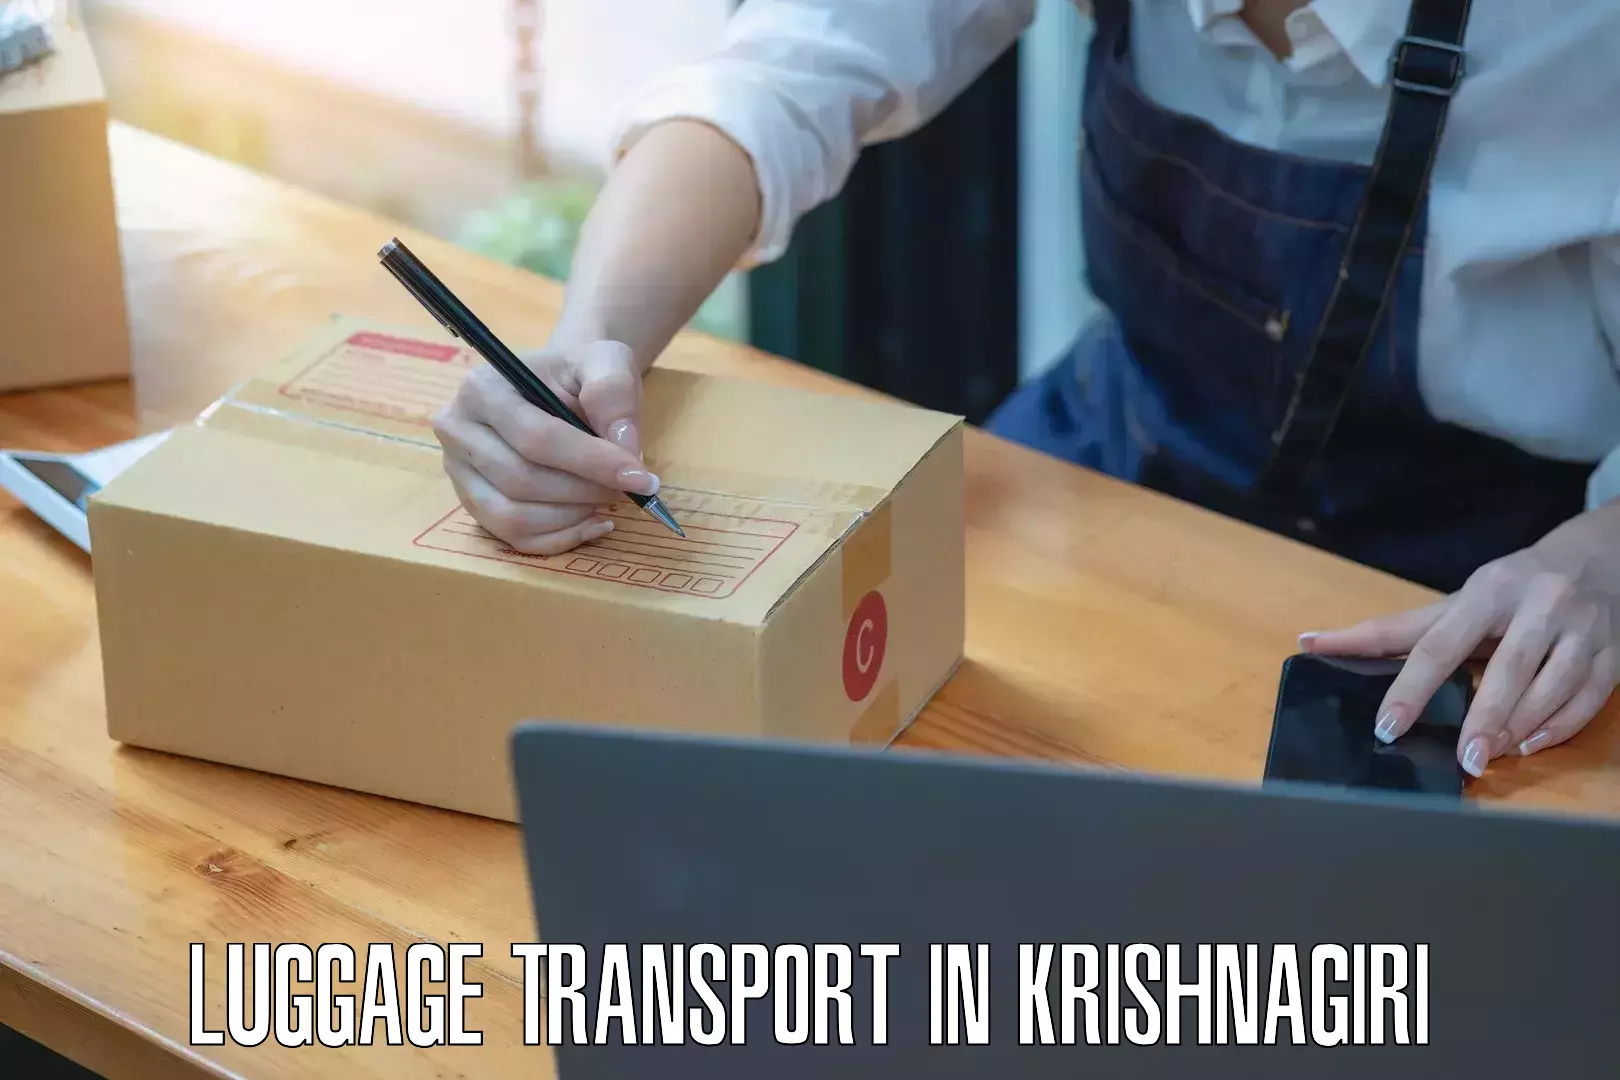 Luggage shipping estimate in Krishnagiri